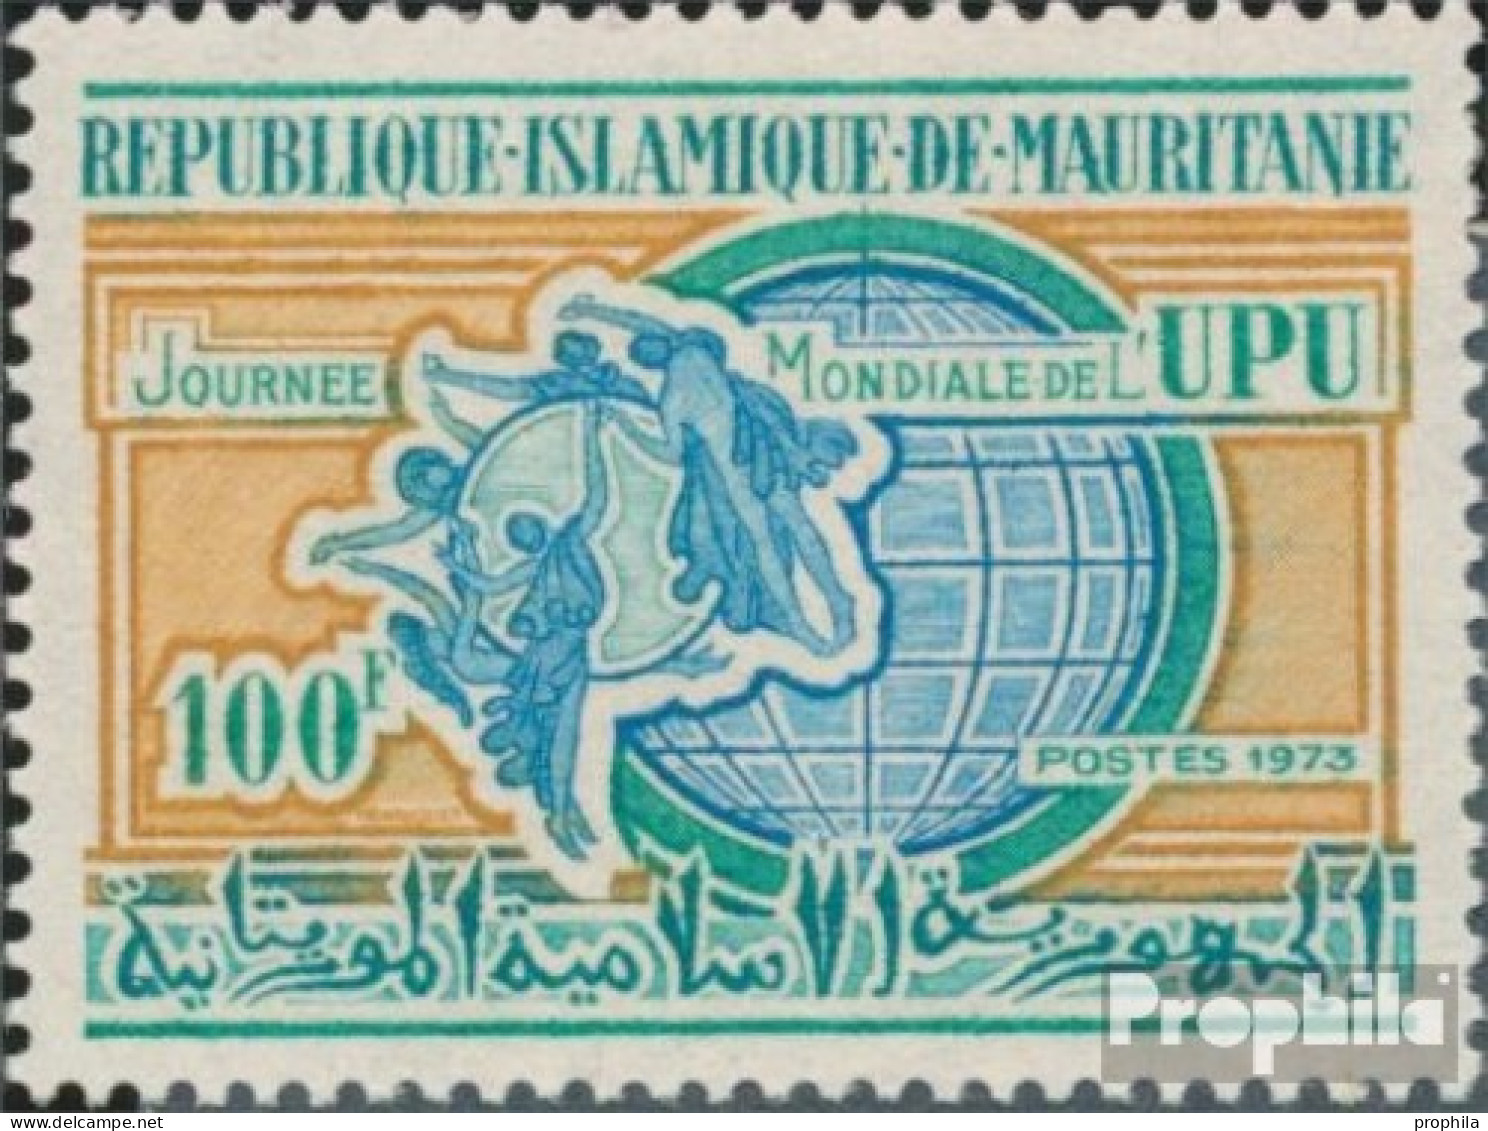 Mauretanien 455 (kompl.Ausg.) Postfrisch 1973 Posttag - Mauritanië (1960-...)